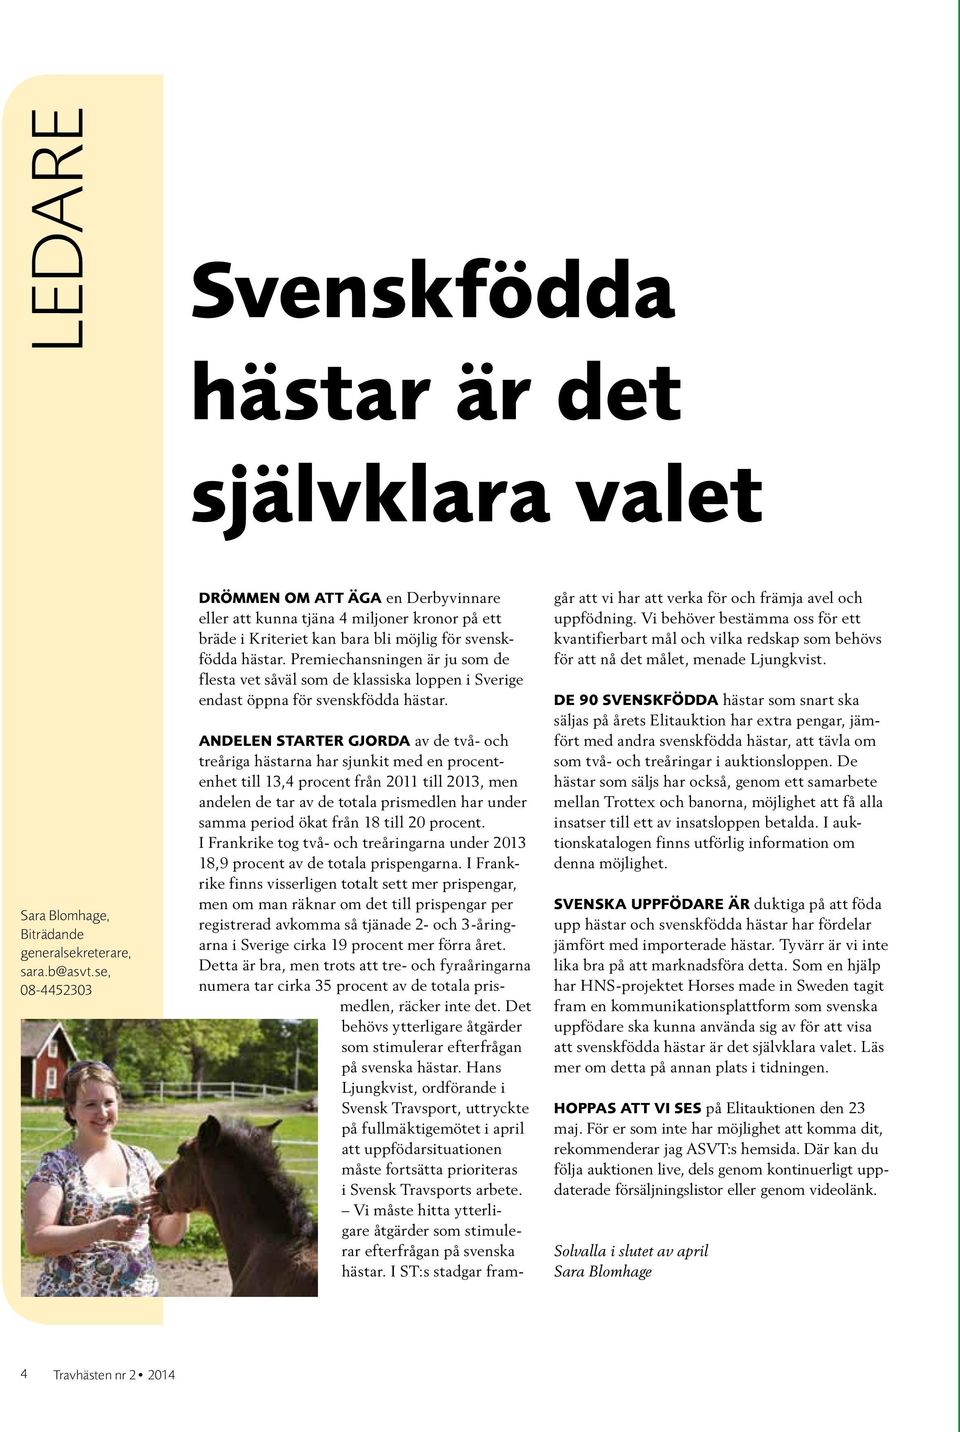 Premiechansningen är ju som de flesta vet såväl som de klassiska loppen i Sverige endast öppna för svenskfödda hästar.